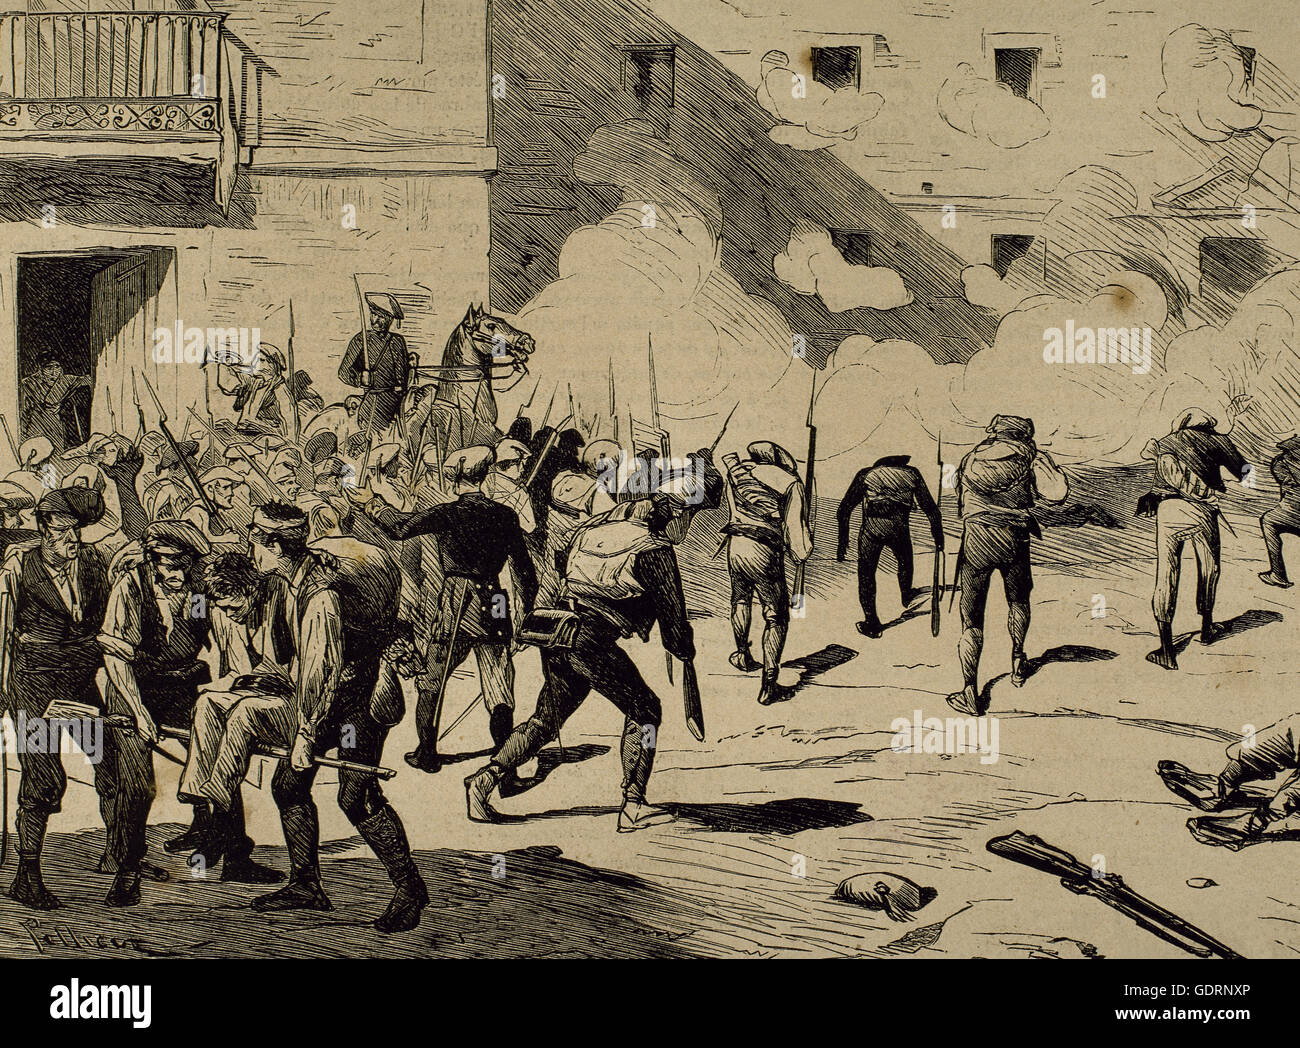 Spagna. Terza guerra carlista. Nel giugno 1872 il generale carlista Joan Francesch ho Serret (1833-1872) entra in Reus (Catalogna) con 400 soldati e sorprendente il presidio liberale. Egli è morto in combattimento. Incisione di Pellicer in 'La Ilustracion Española y Americana ", 1872. Foto Stock